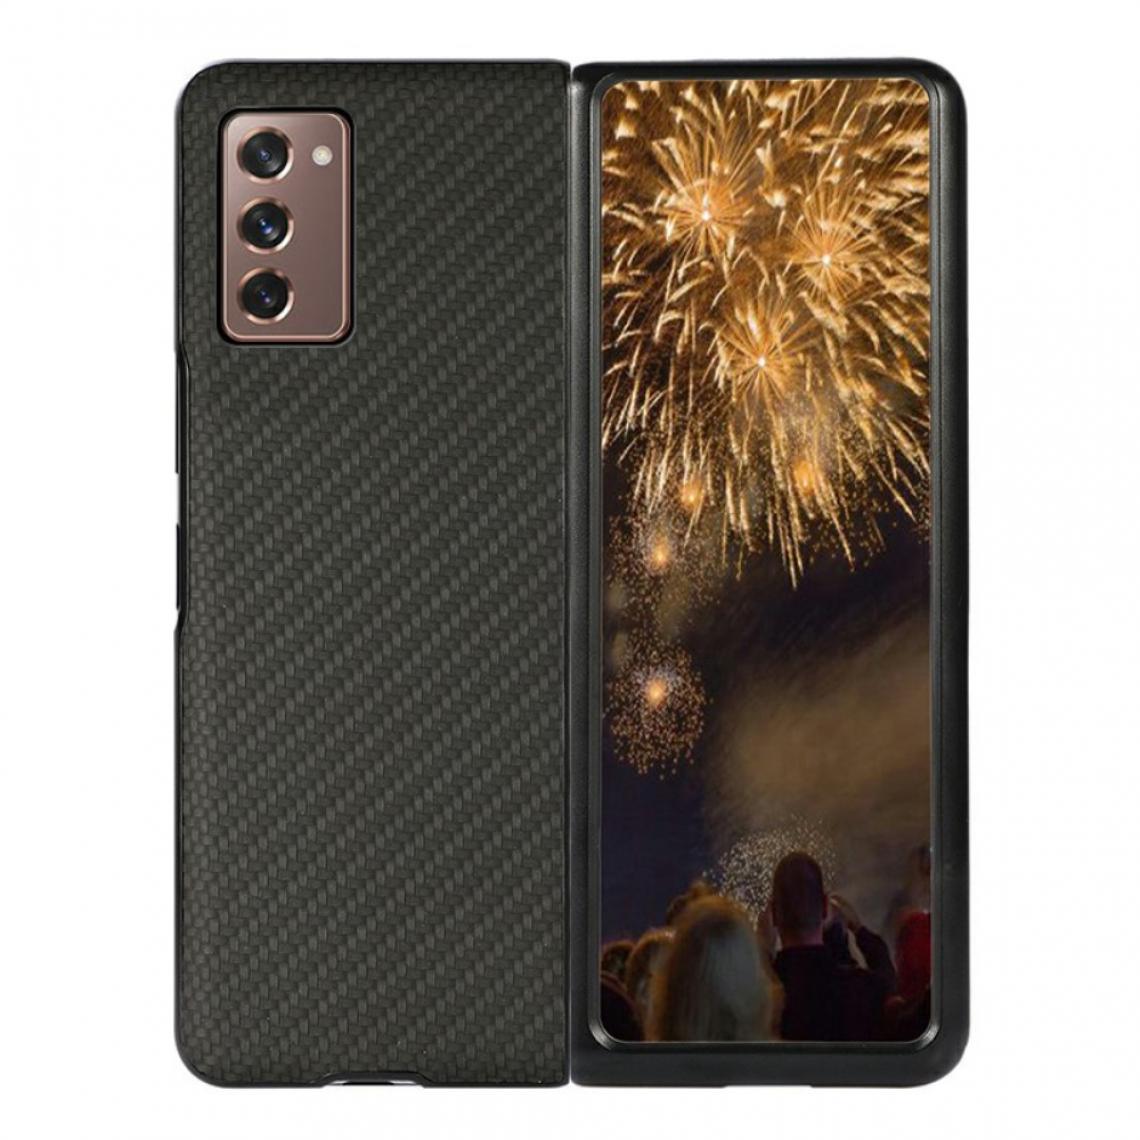 Other - Coque en TPU + PU Texture de fibre de carbone noir pour votre Samsung Galaxy Z Fold2 5G - Coque, étui smartphone